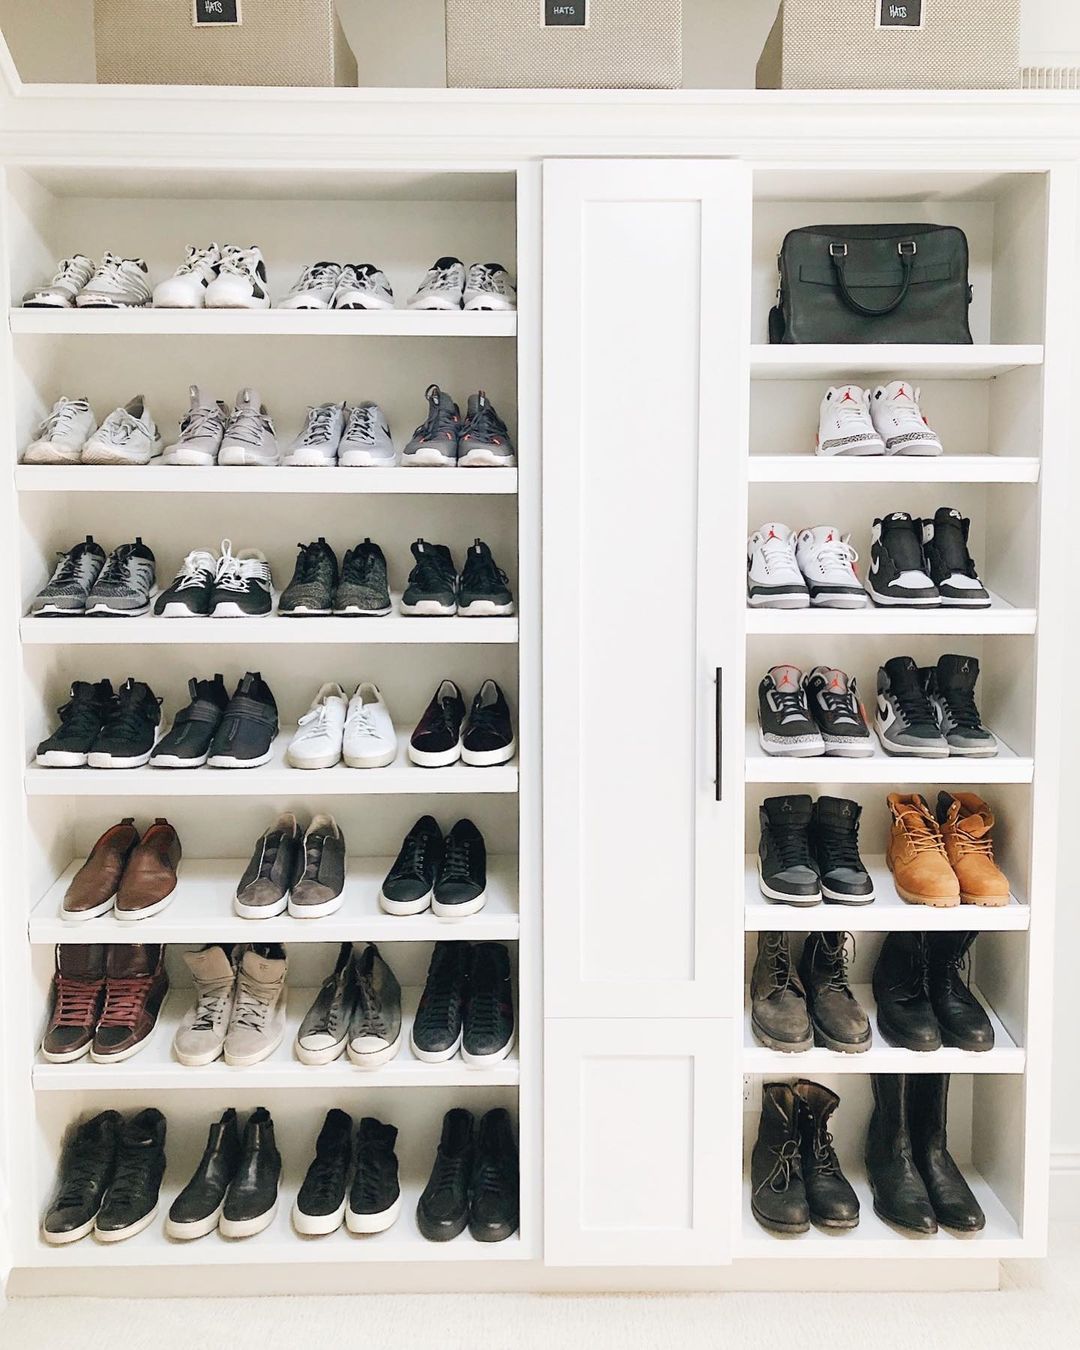 Closet Shoe Shelves Design Ideas